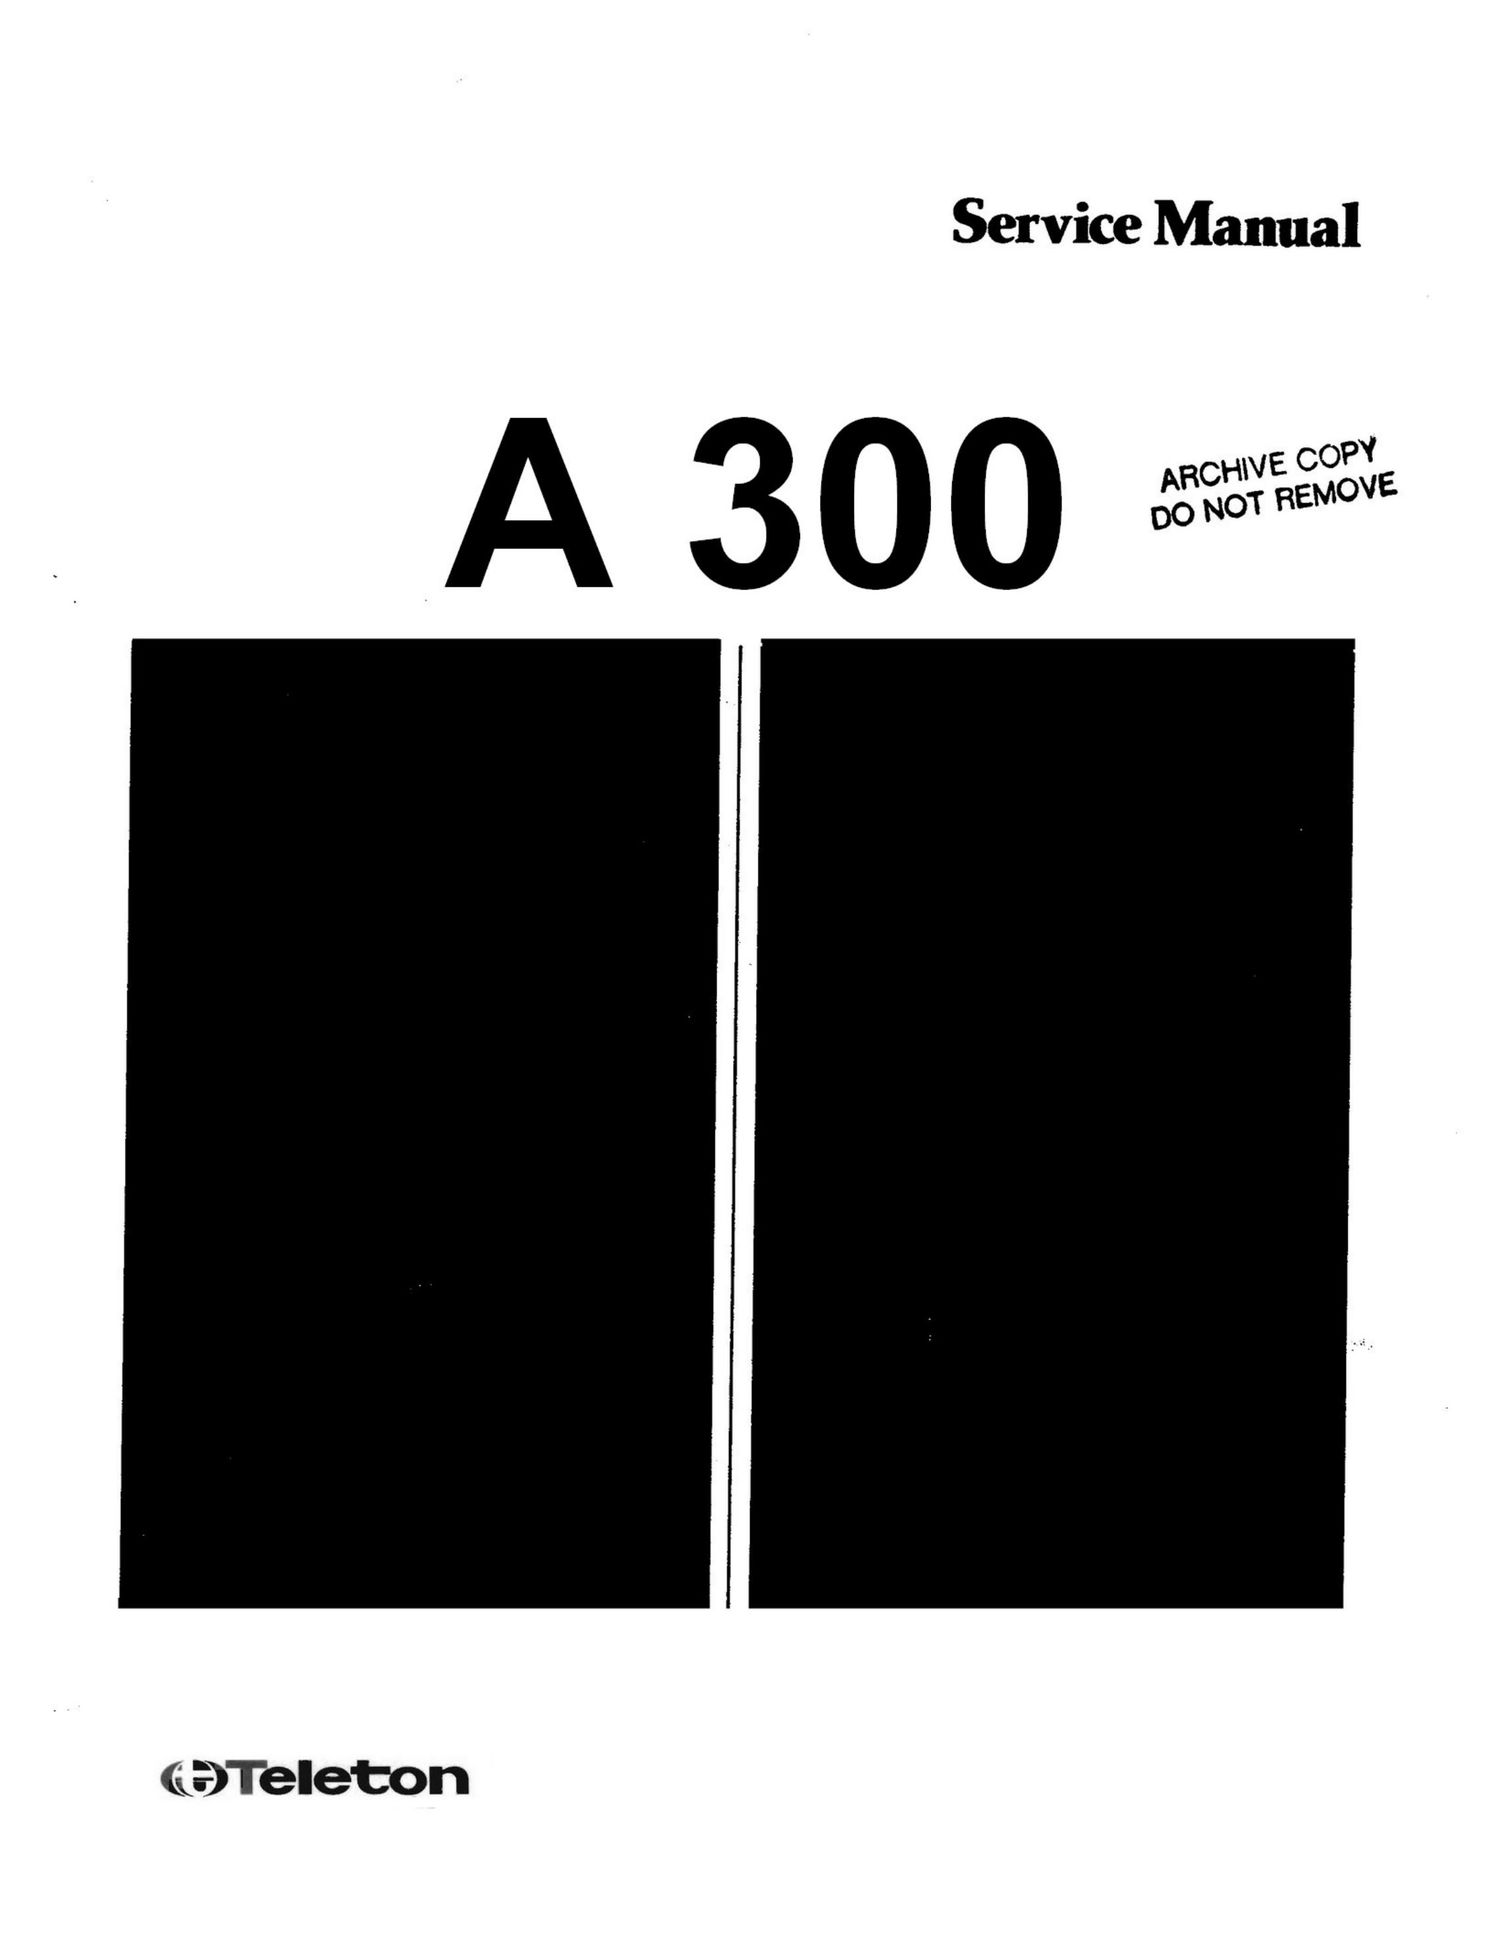 Teleton A300 Service Manual